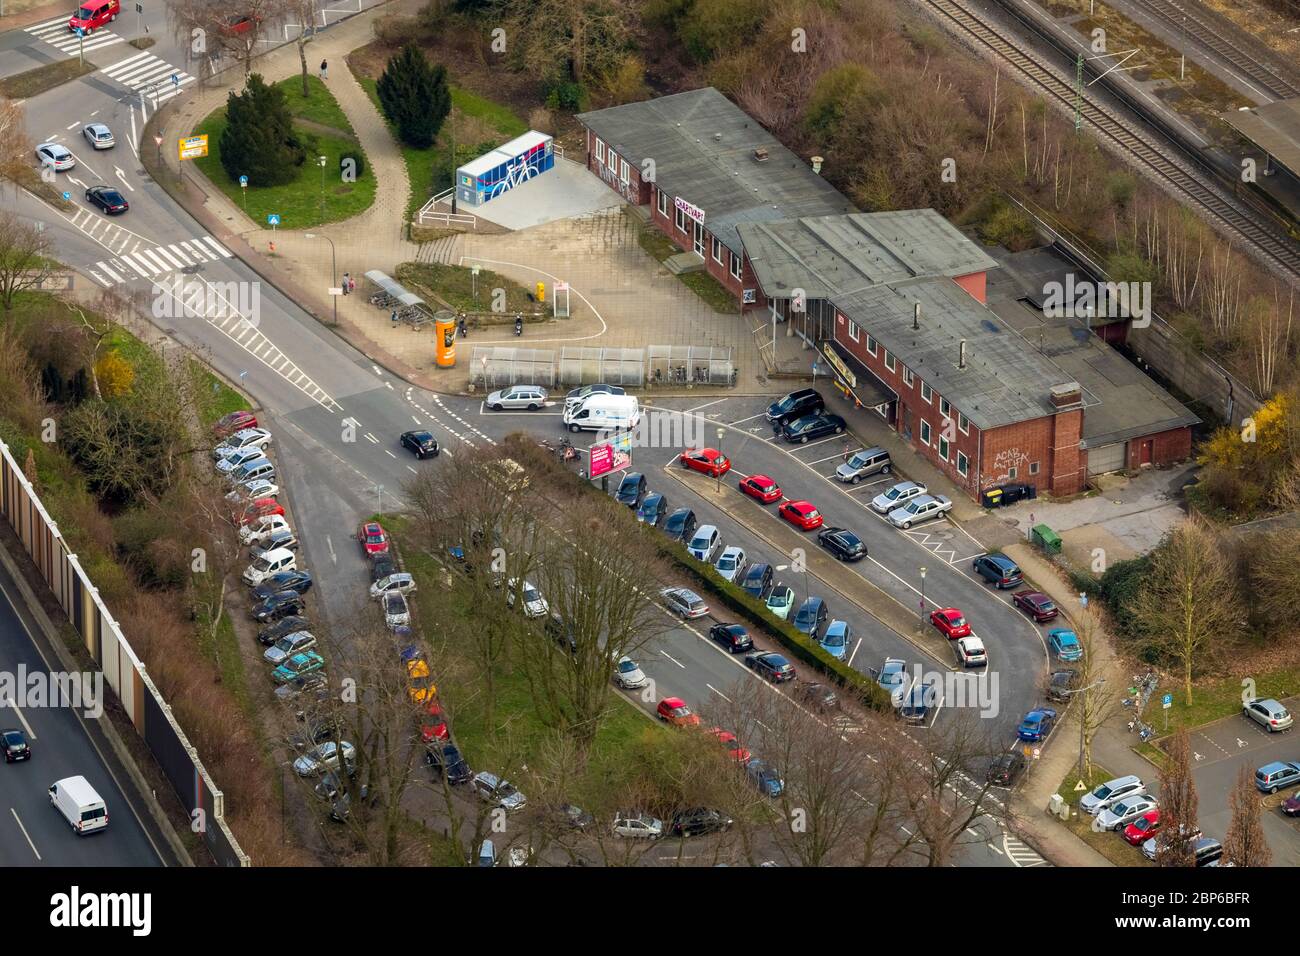 Aerial view,  Wattenscheid station with forecourt,  A40 motorway,  Ruhrschnellweg,  parking lots,  parking lot,  Wattenscheid,  Bochum,  Ruhr area,  North Rhine-Westphalia,  Germany Stock Photo